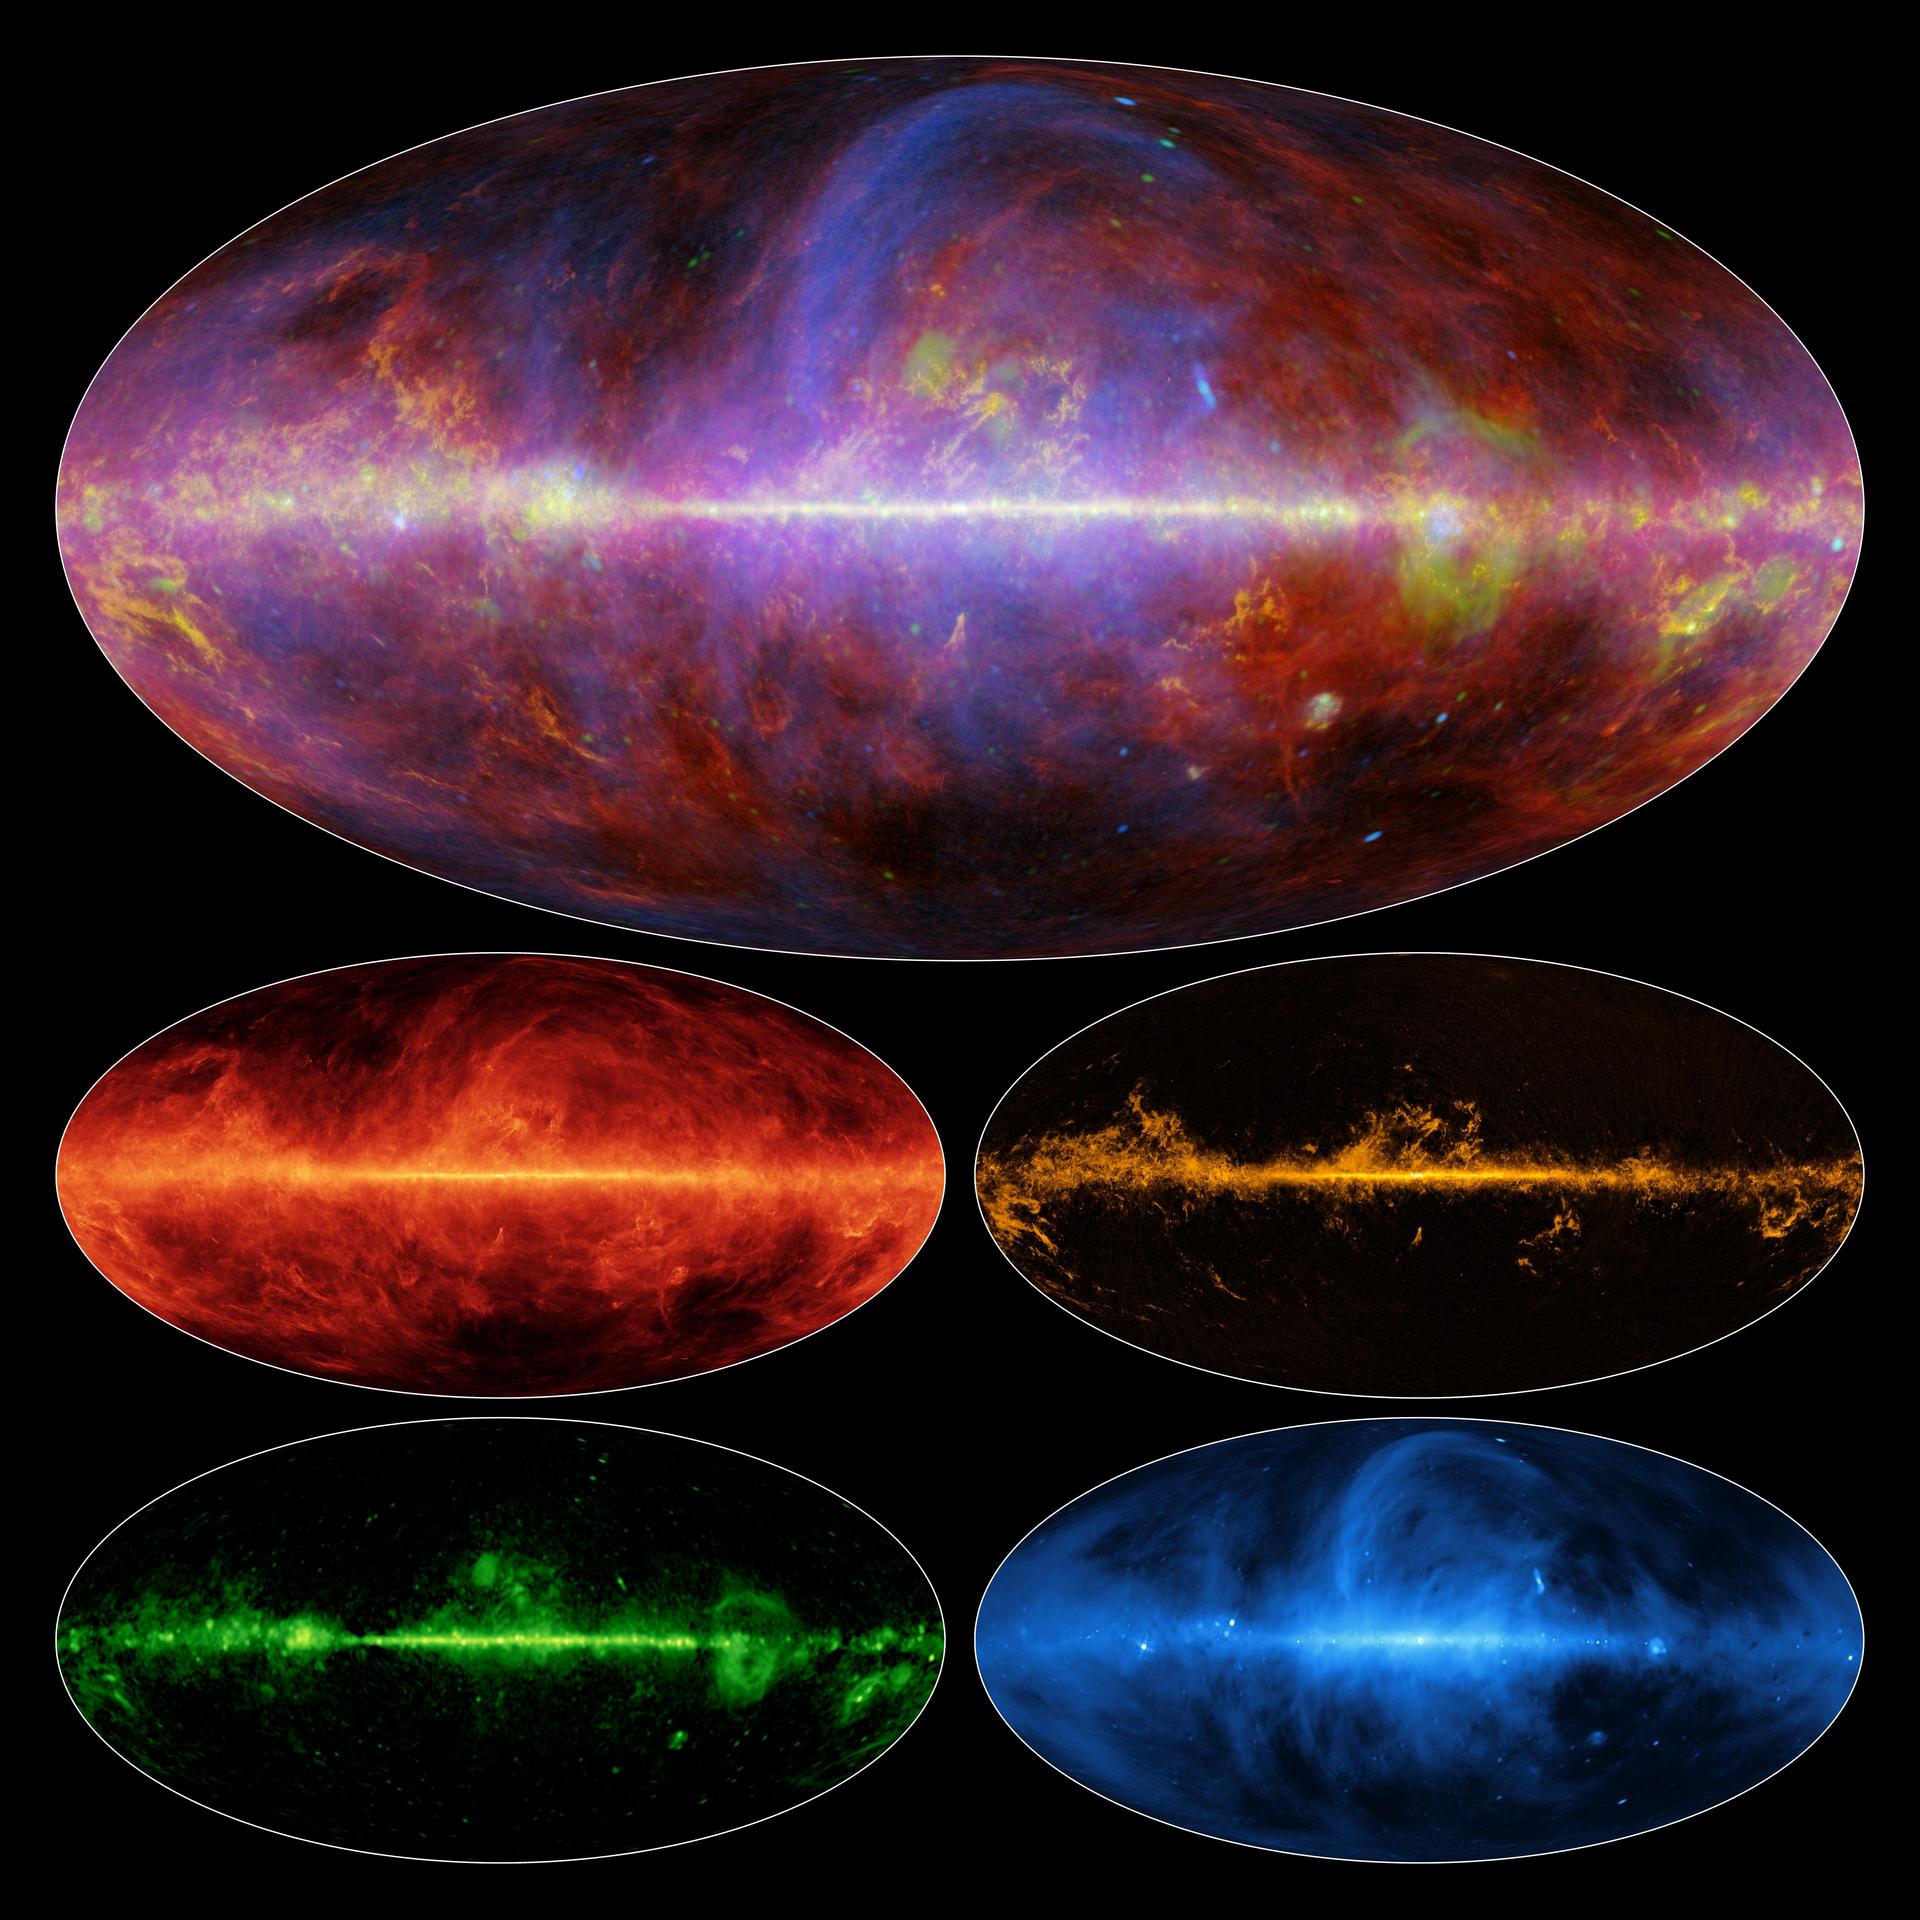 Здесь приведены снимки окрестностей Млечного пути, сделанные командой «Планка». На крупном в наложении показаны четыре снимка, сделанные телескопом на разных длинах волн. Источник: ESA/NASA/JPL-Caltech.